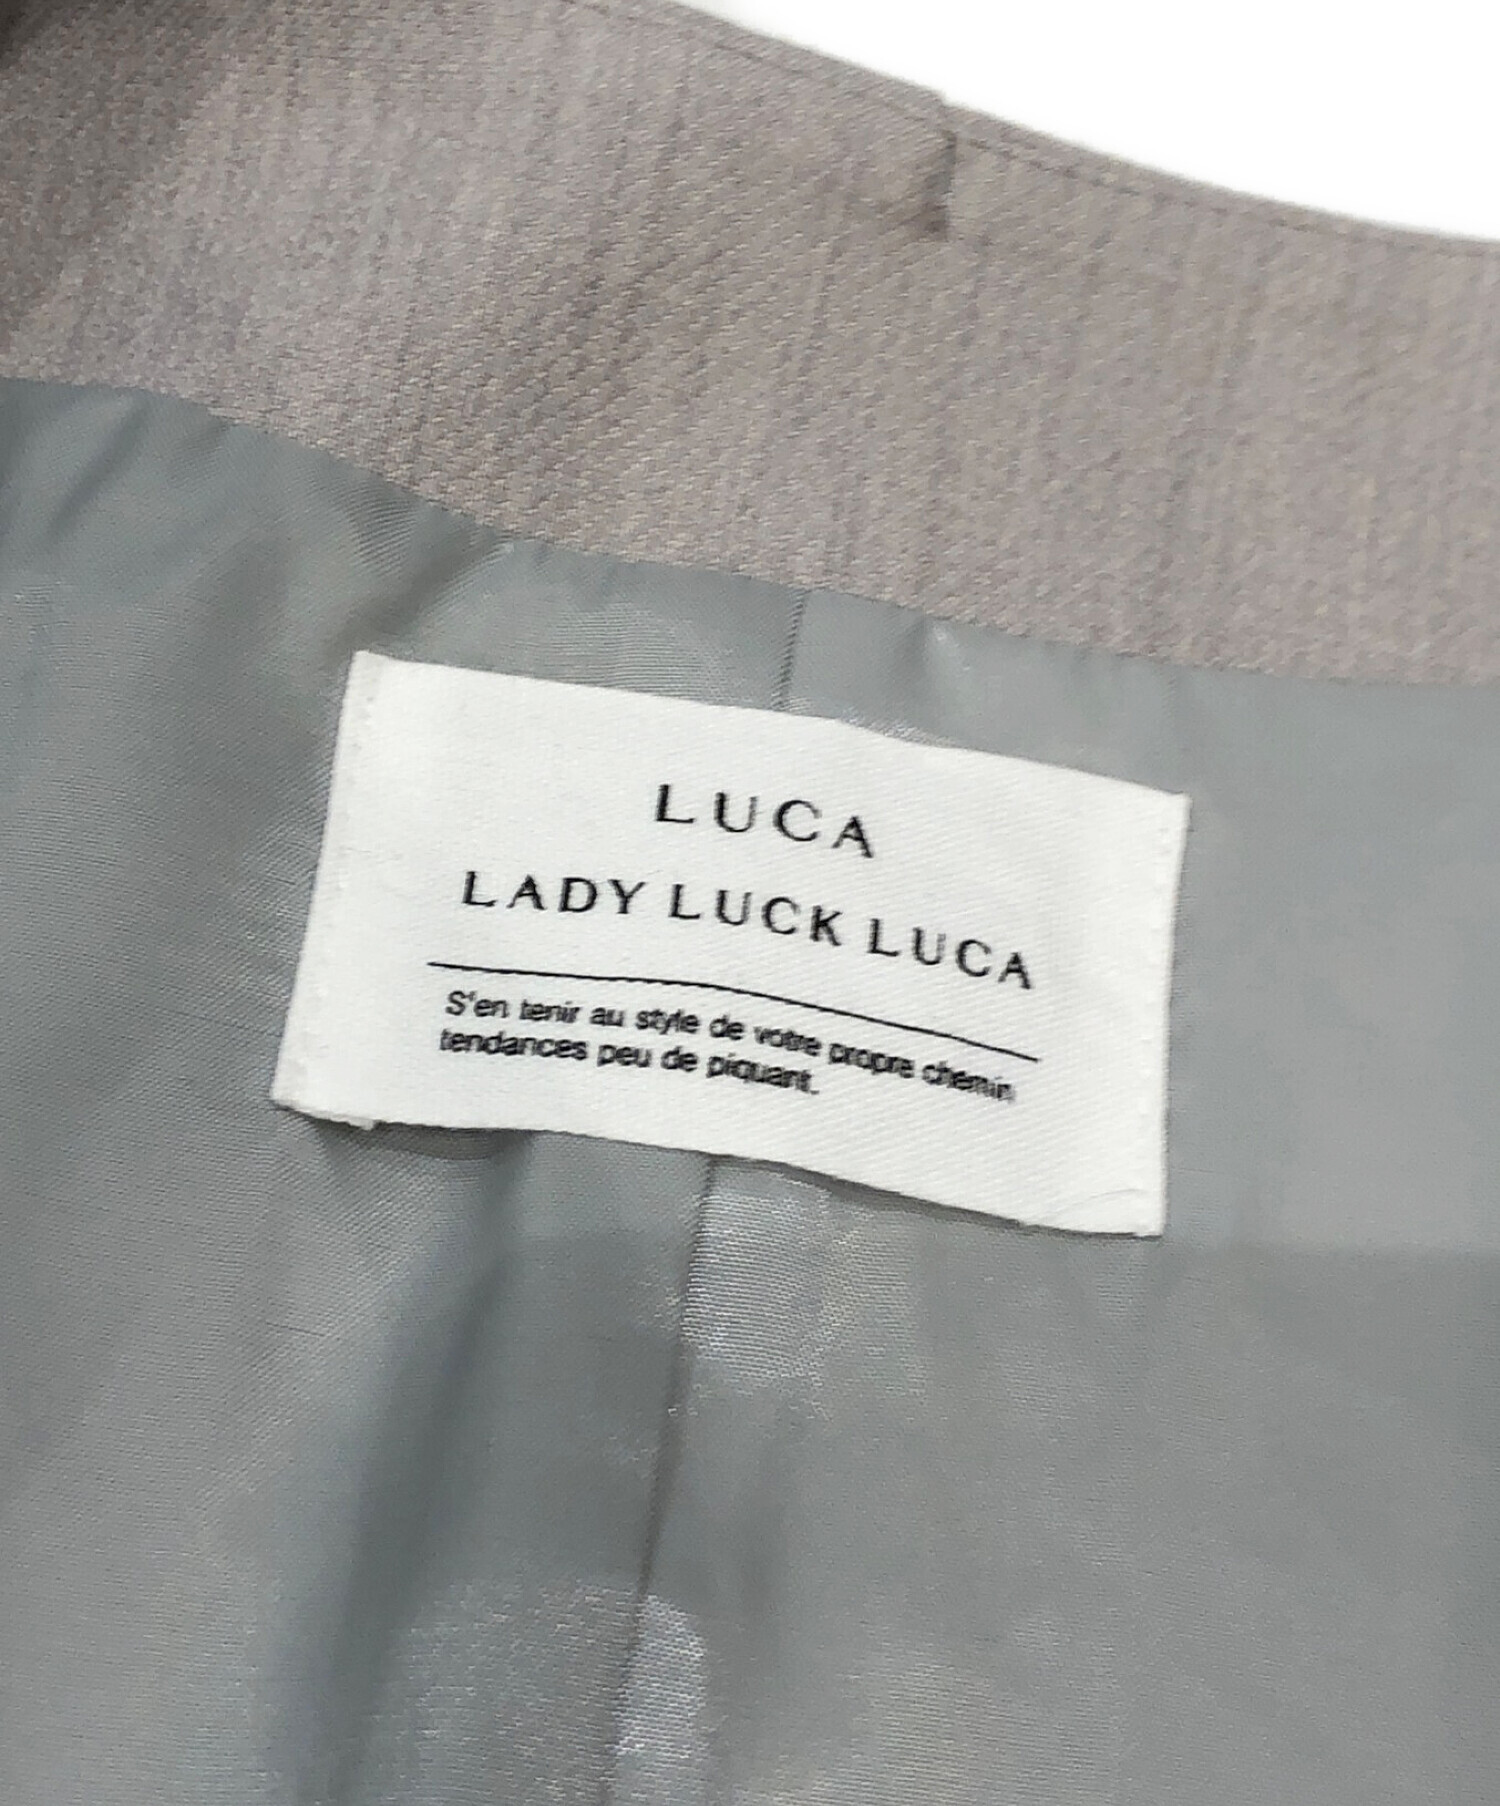 中古・古着通販】LUCA/LADY LUCK LUCA (レディラックルカ